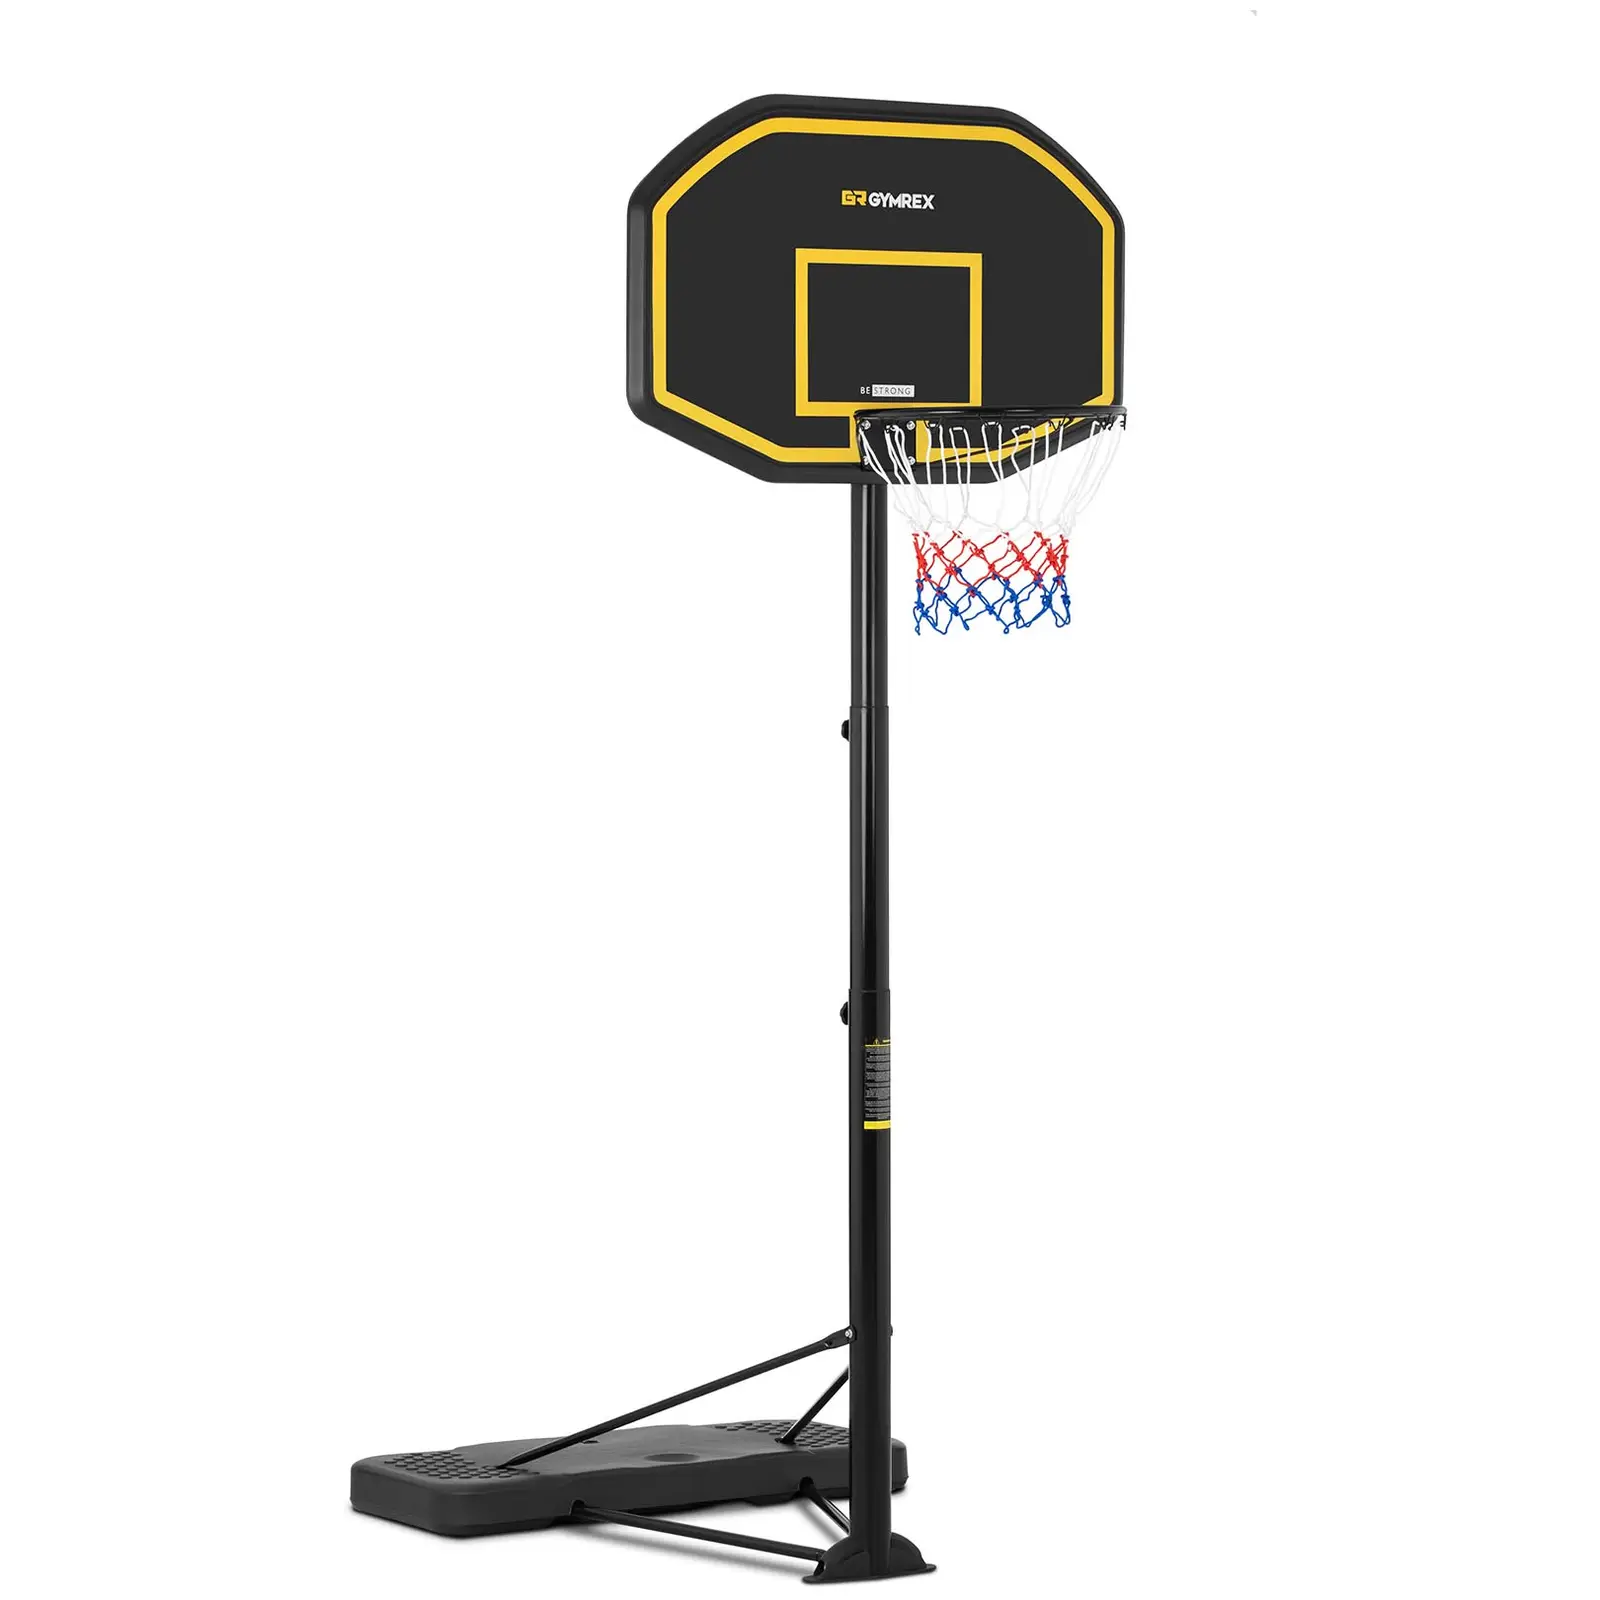 Basketballkorb mit Ständer - höhenverstellbar - 200 bis 305 cm